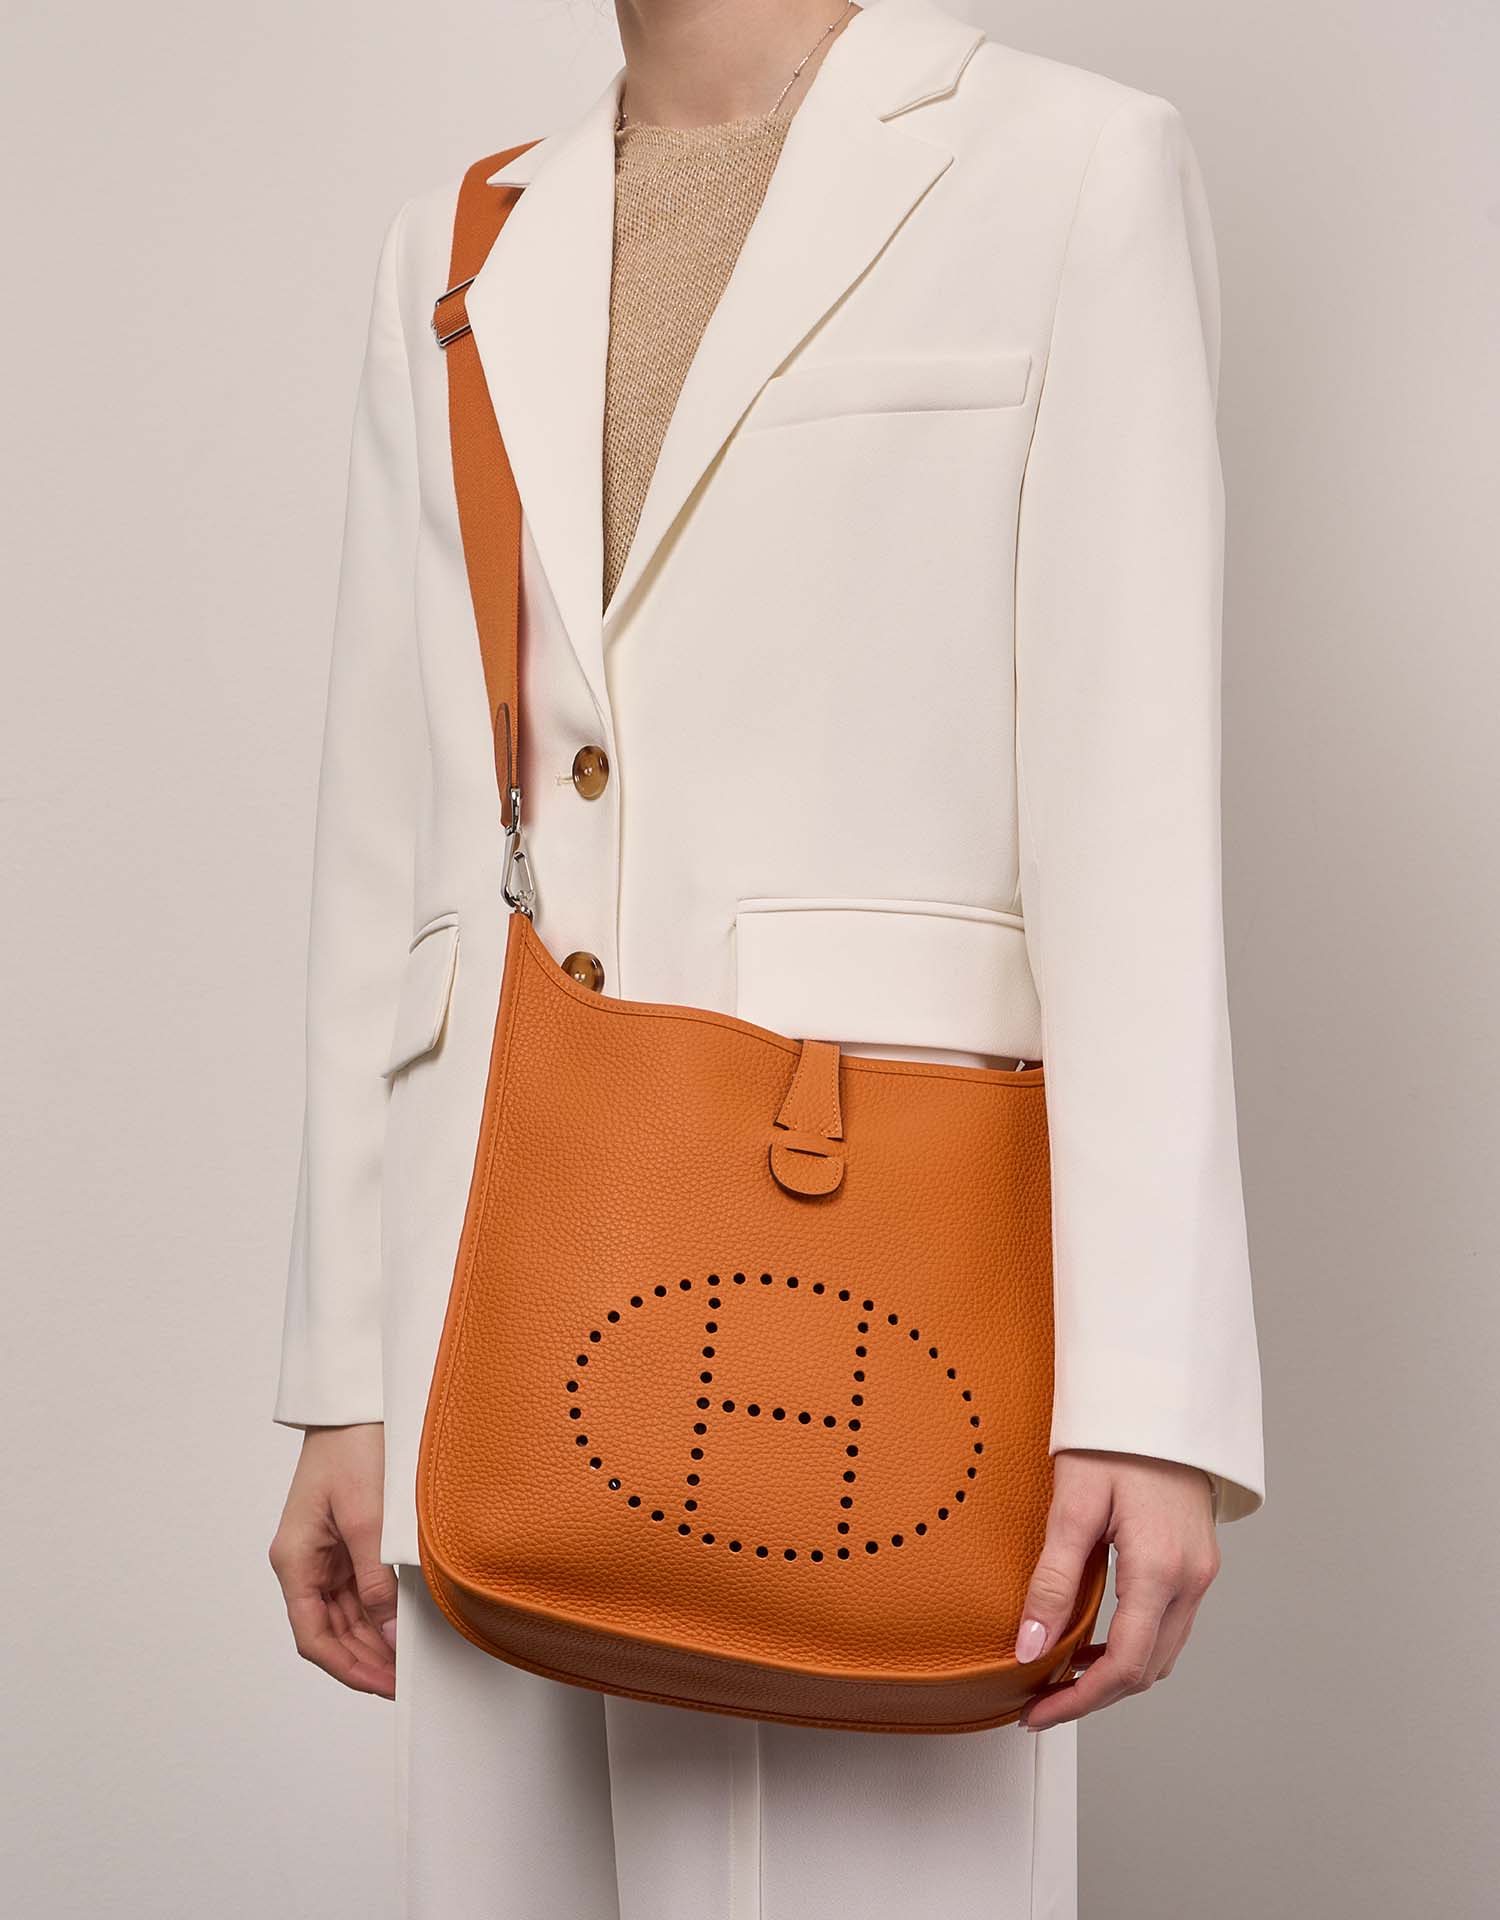 Hermès Evelyne 29 Orange auf Model | Verkaufen Sie Ihre Designer-Tasche auf Saclab.com